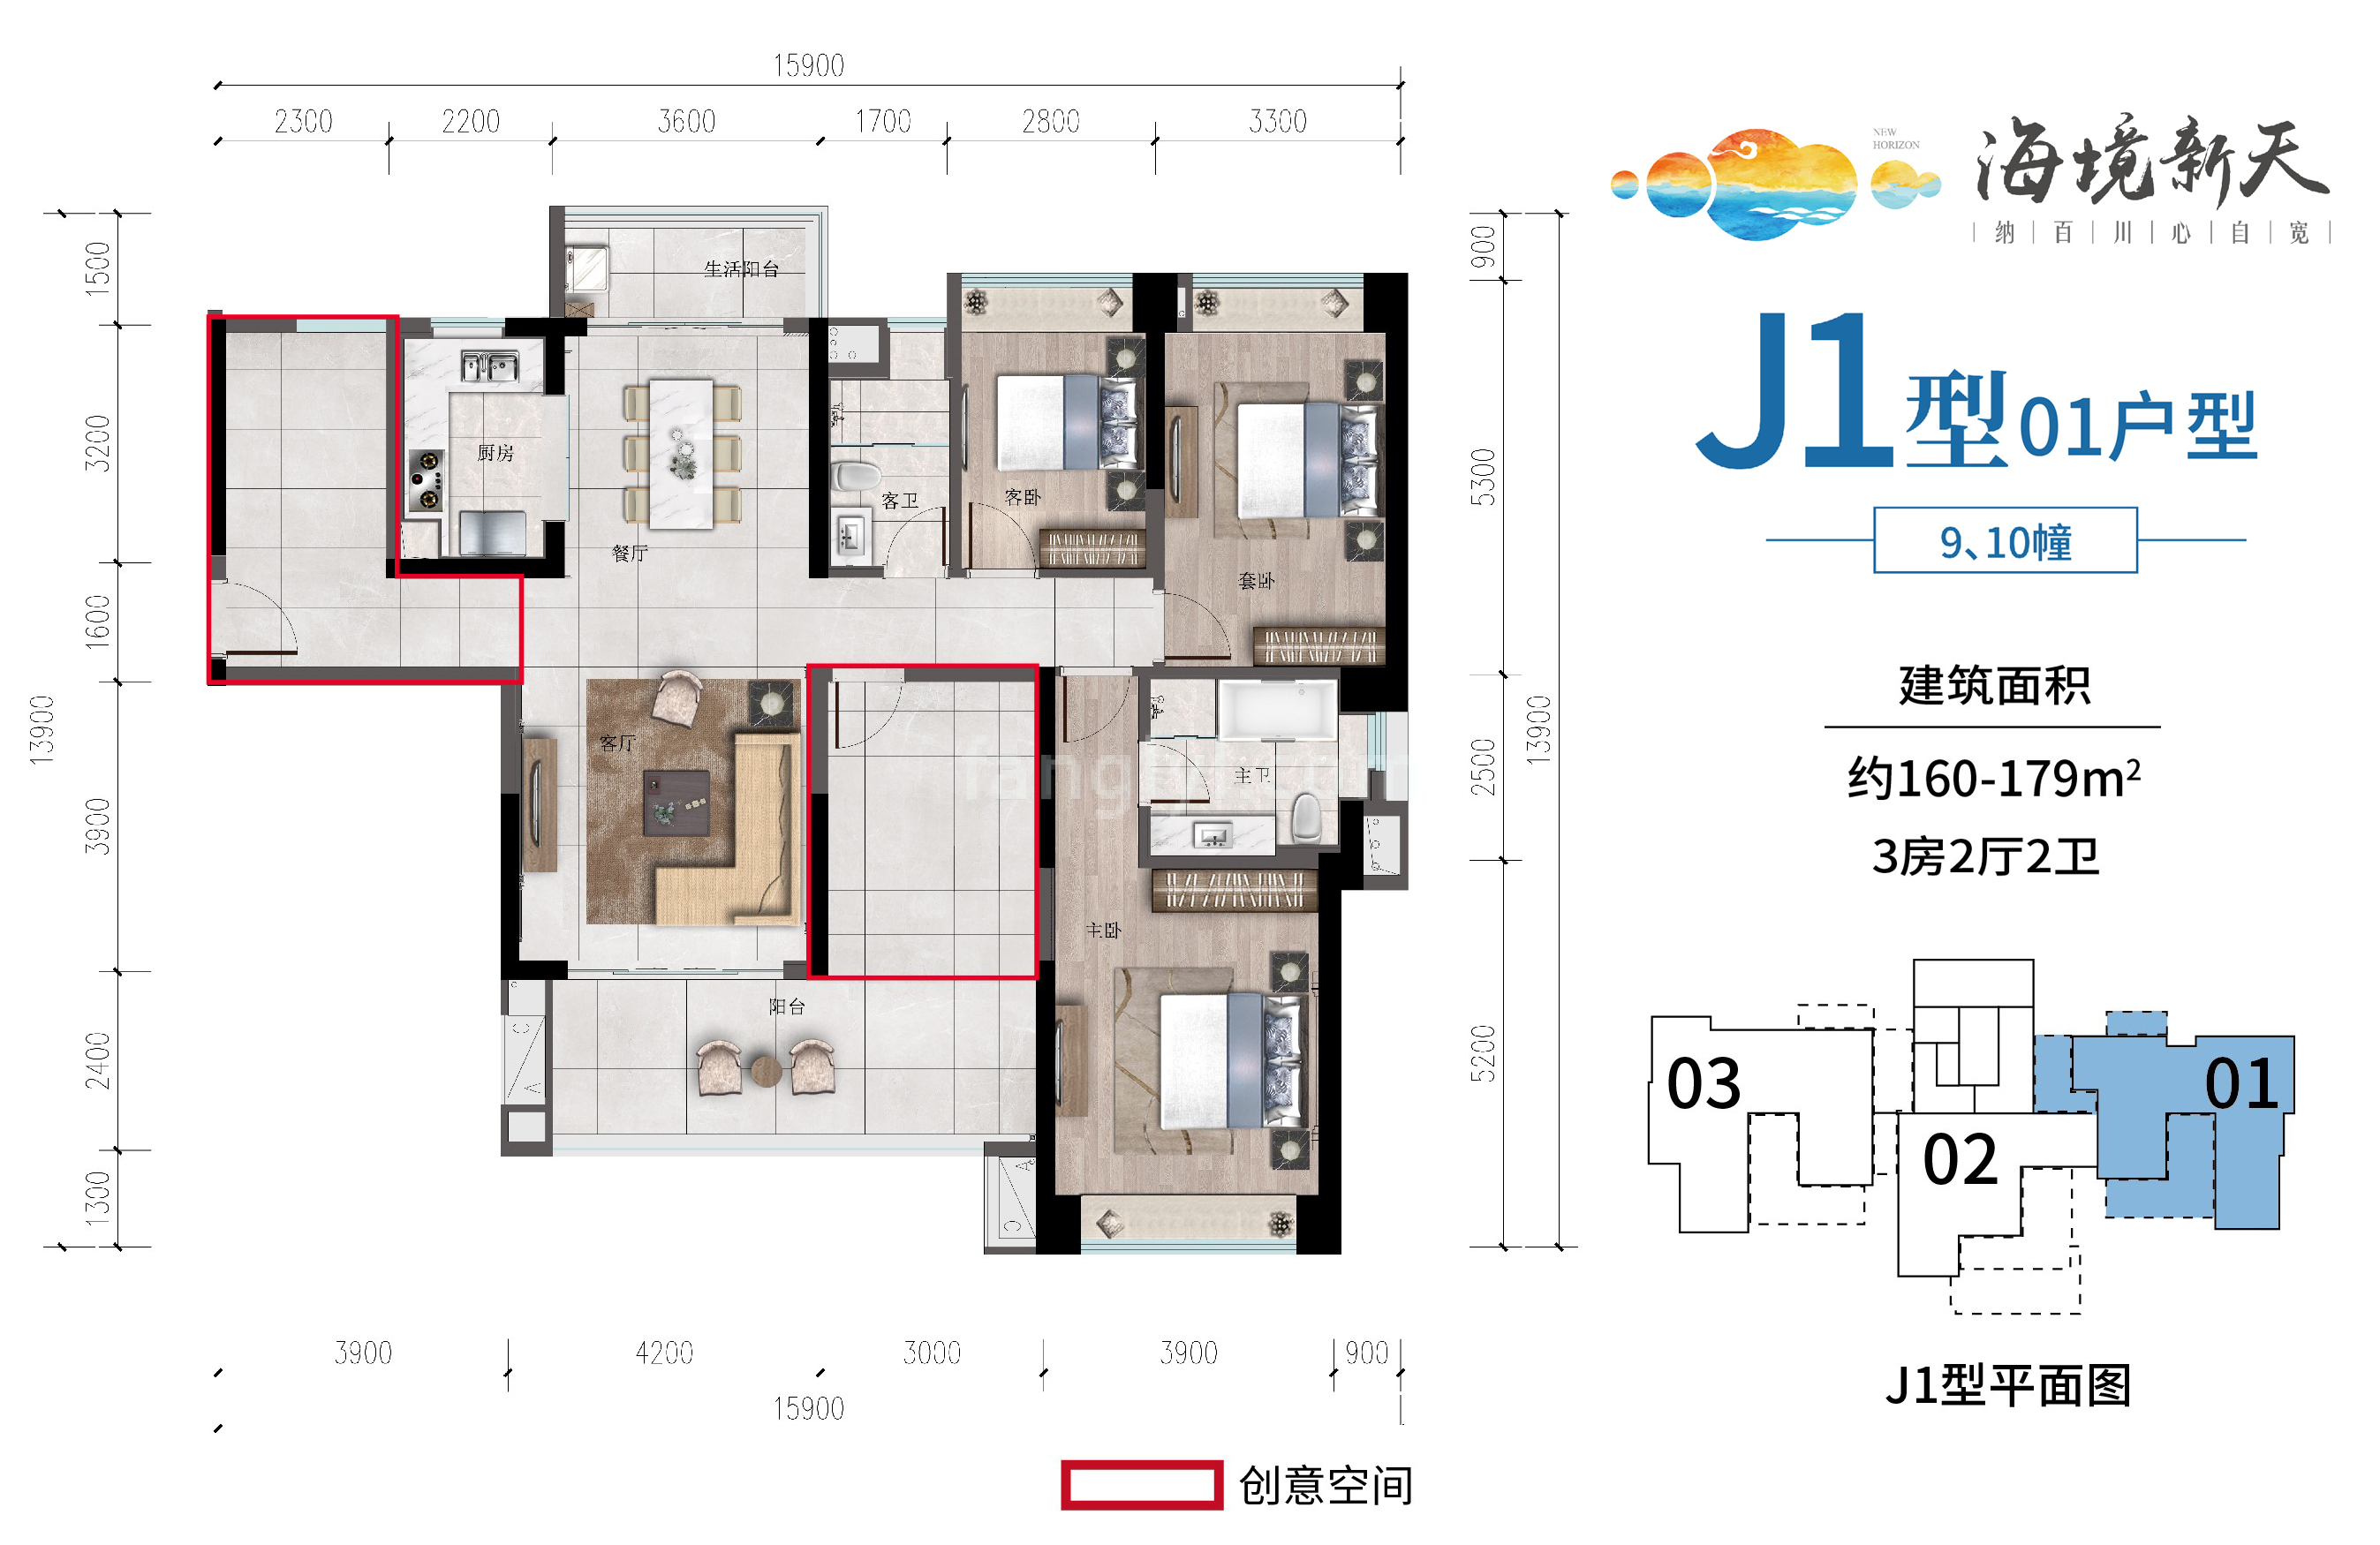 雅居乐清水湾海境新天 洋房 J1型01户型 3房2厅2卫 建面160-179㎡